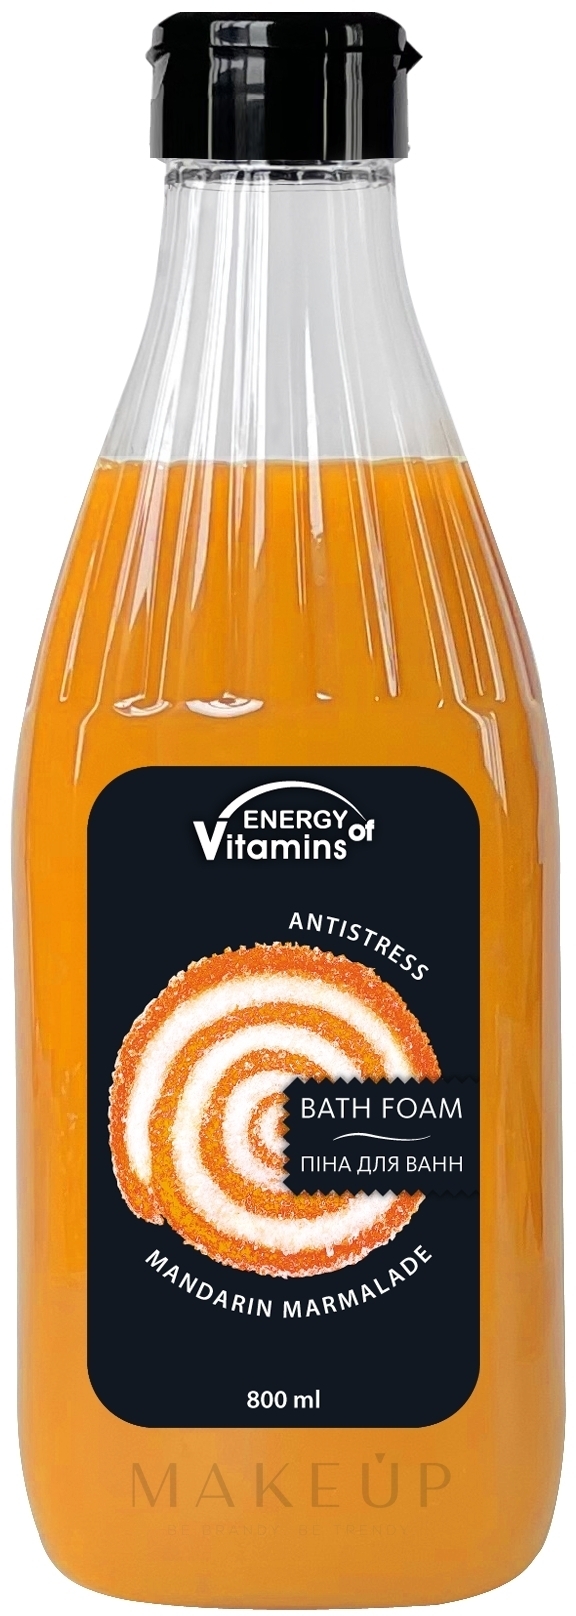 Entspannender Badeschaum mit Mandarinenduft - Leckere Geheimnisse Energy of Vitamins  — Bild 800 ml